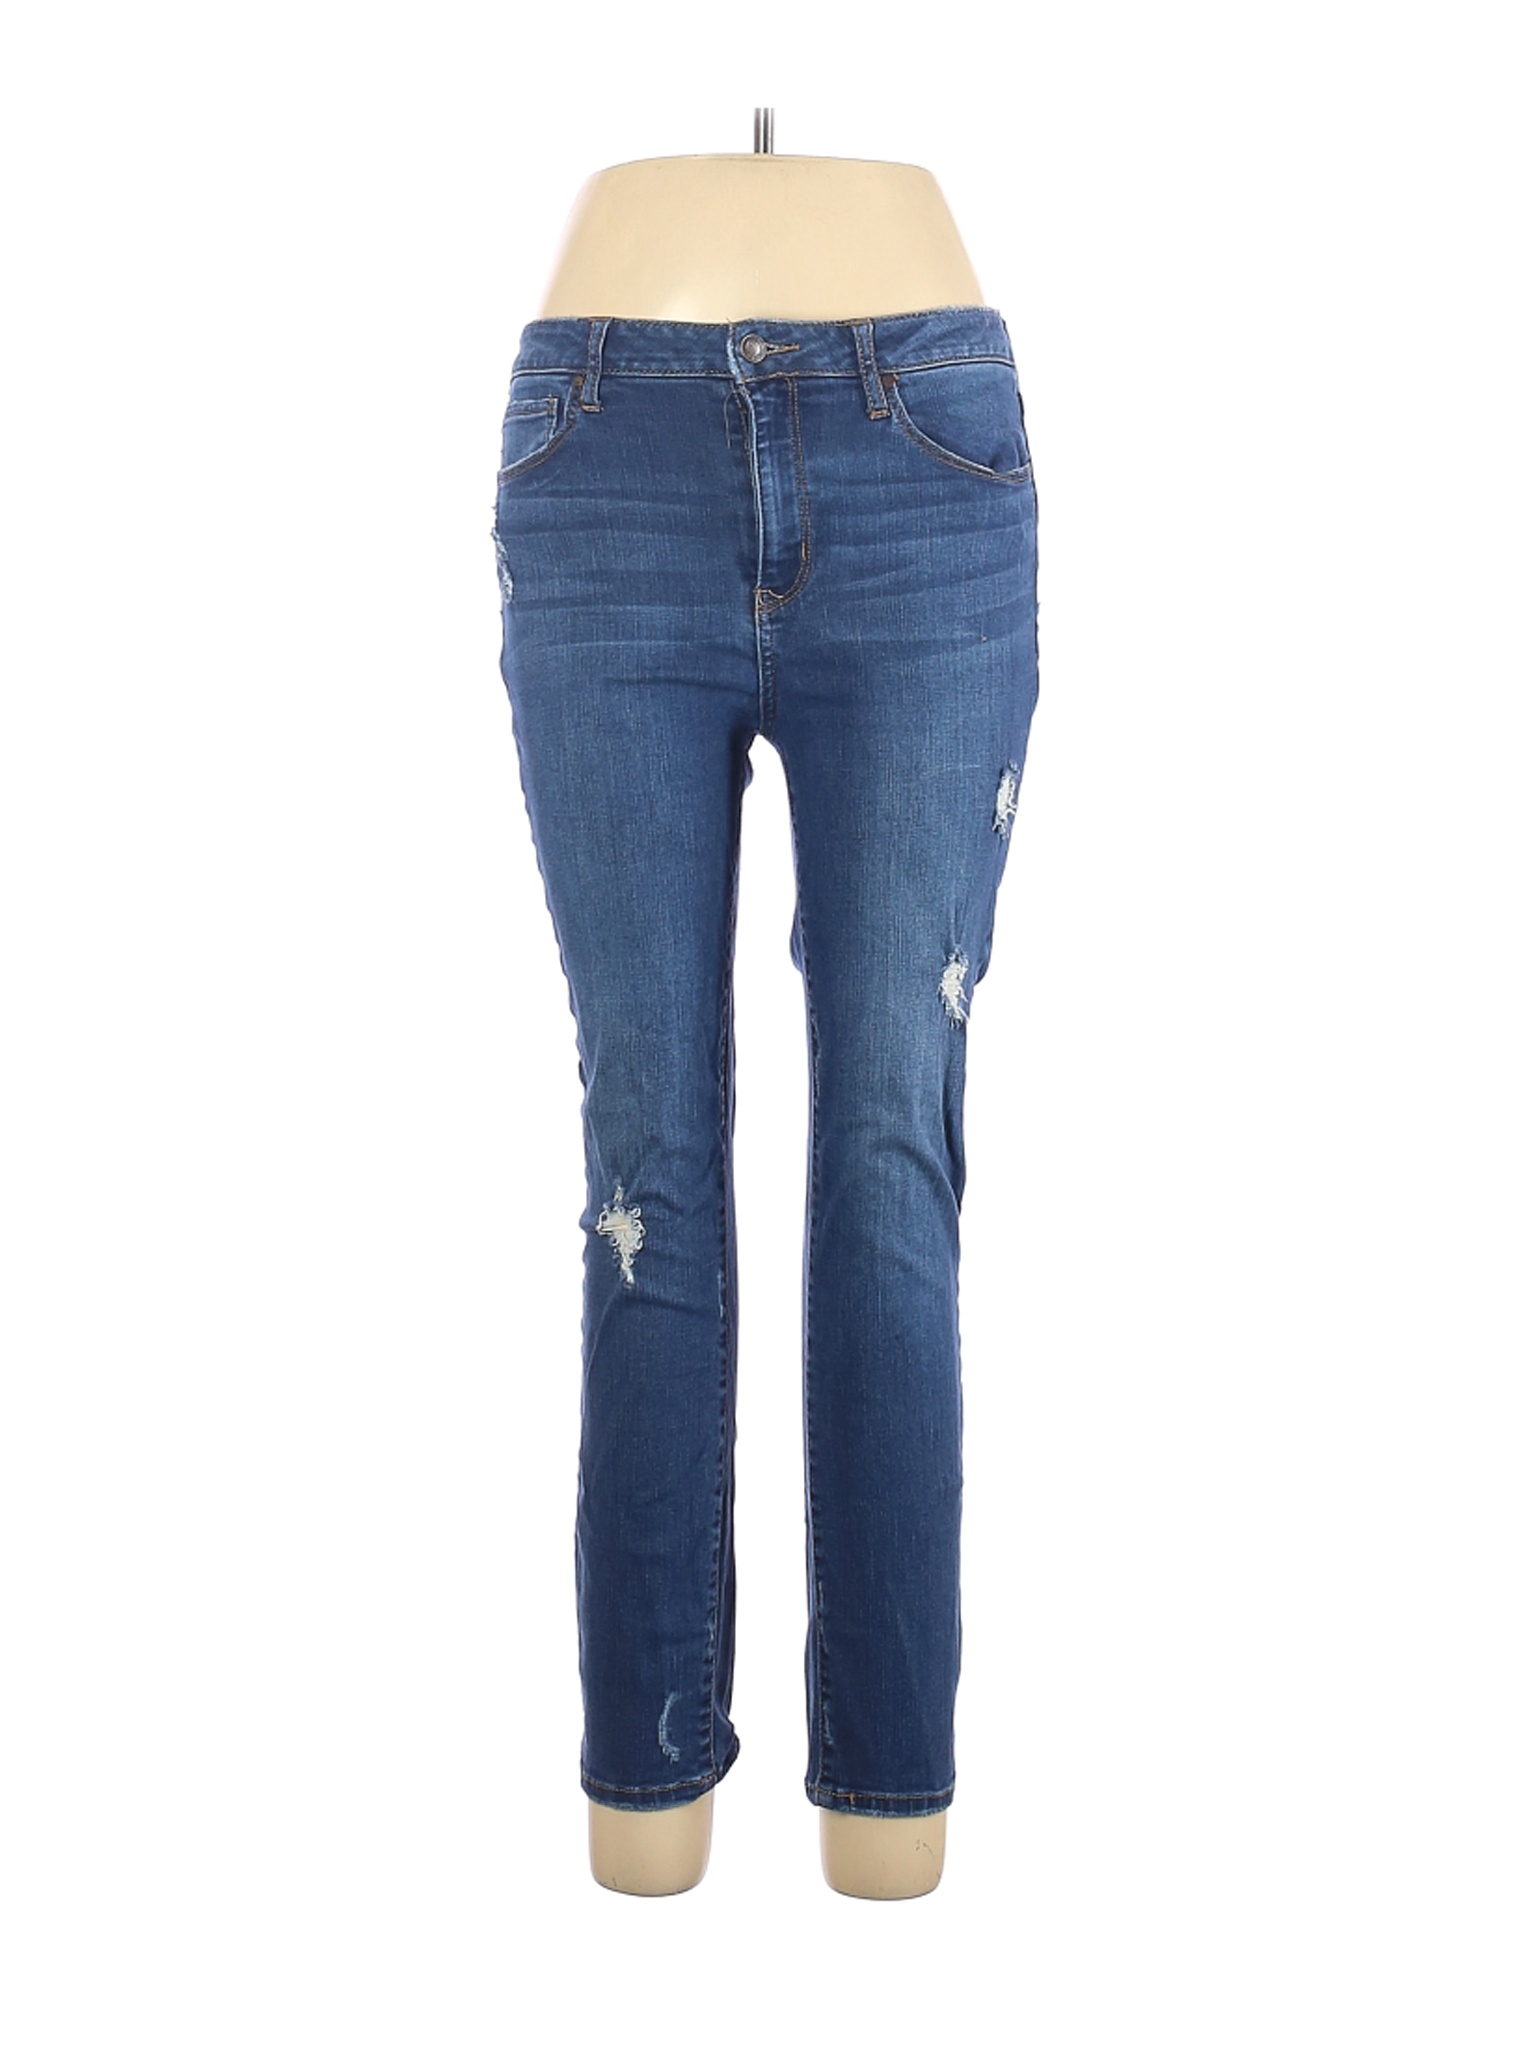 RSQ JEANS Women Blue Jeans 30W | eBay